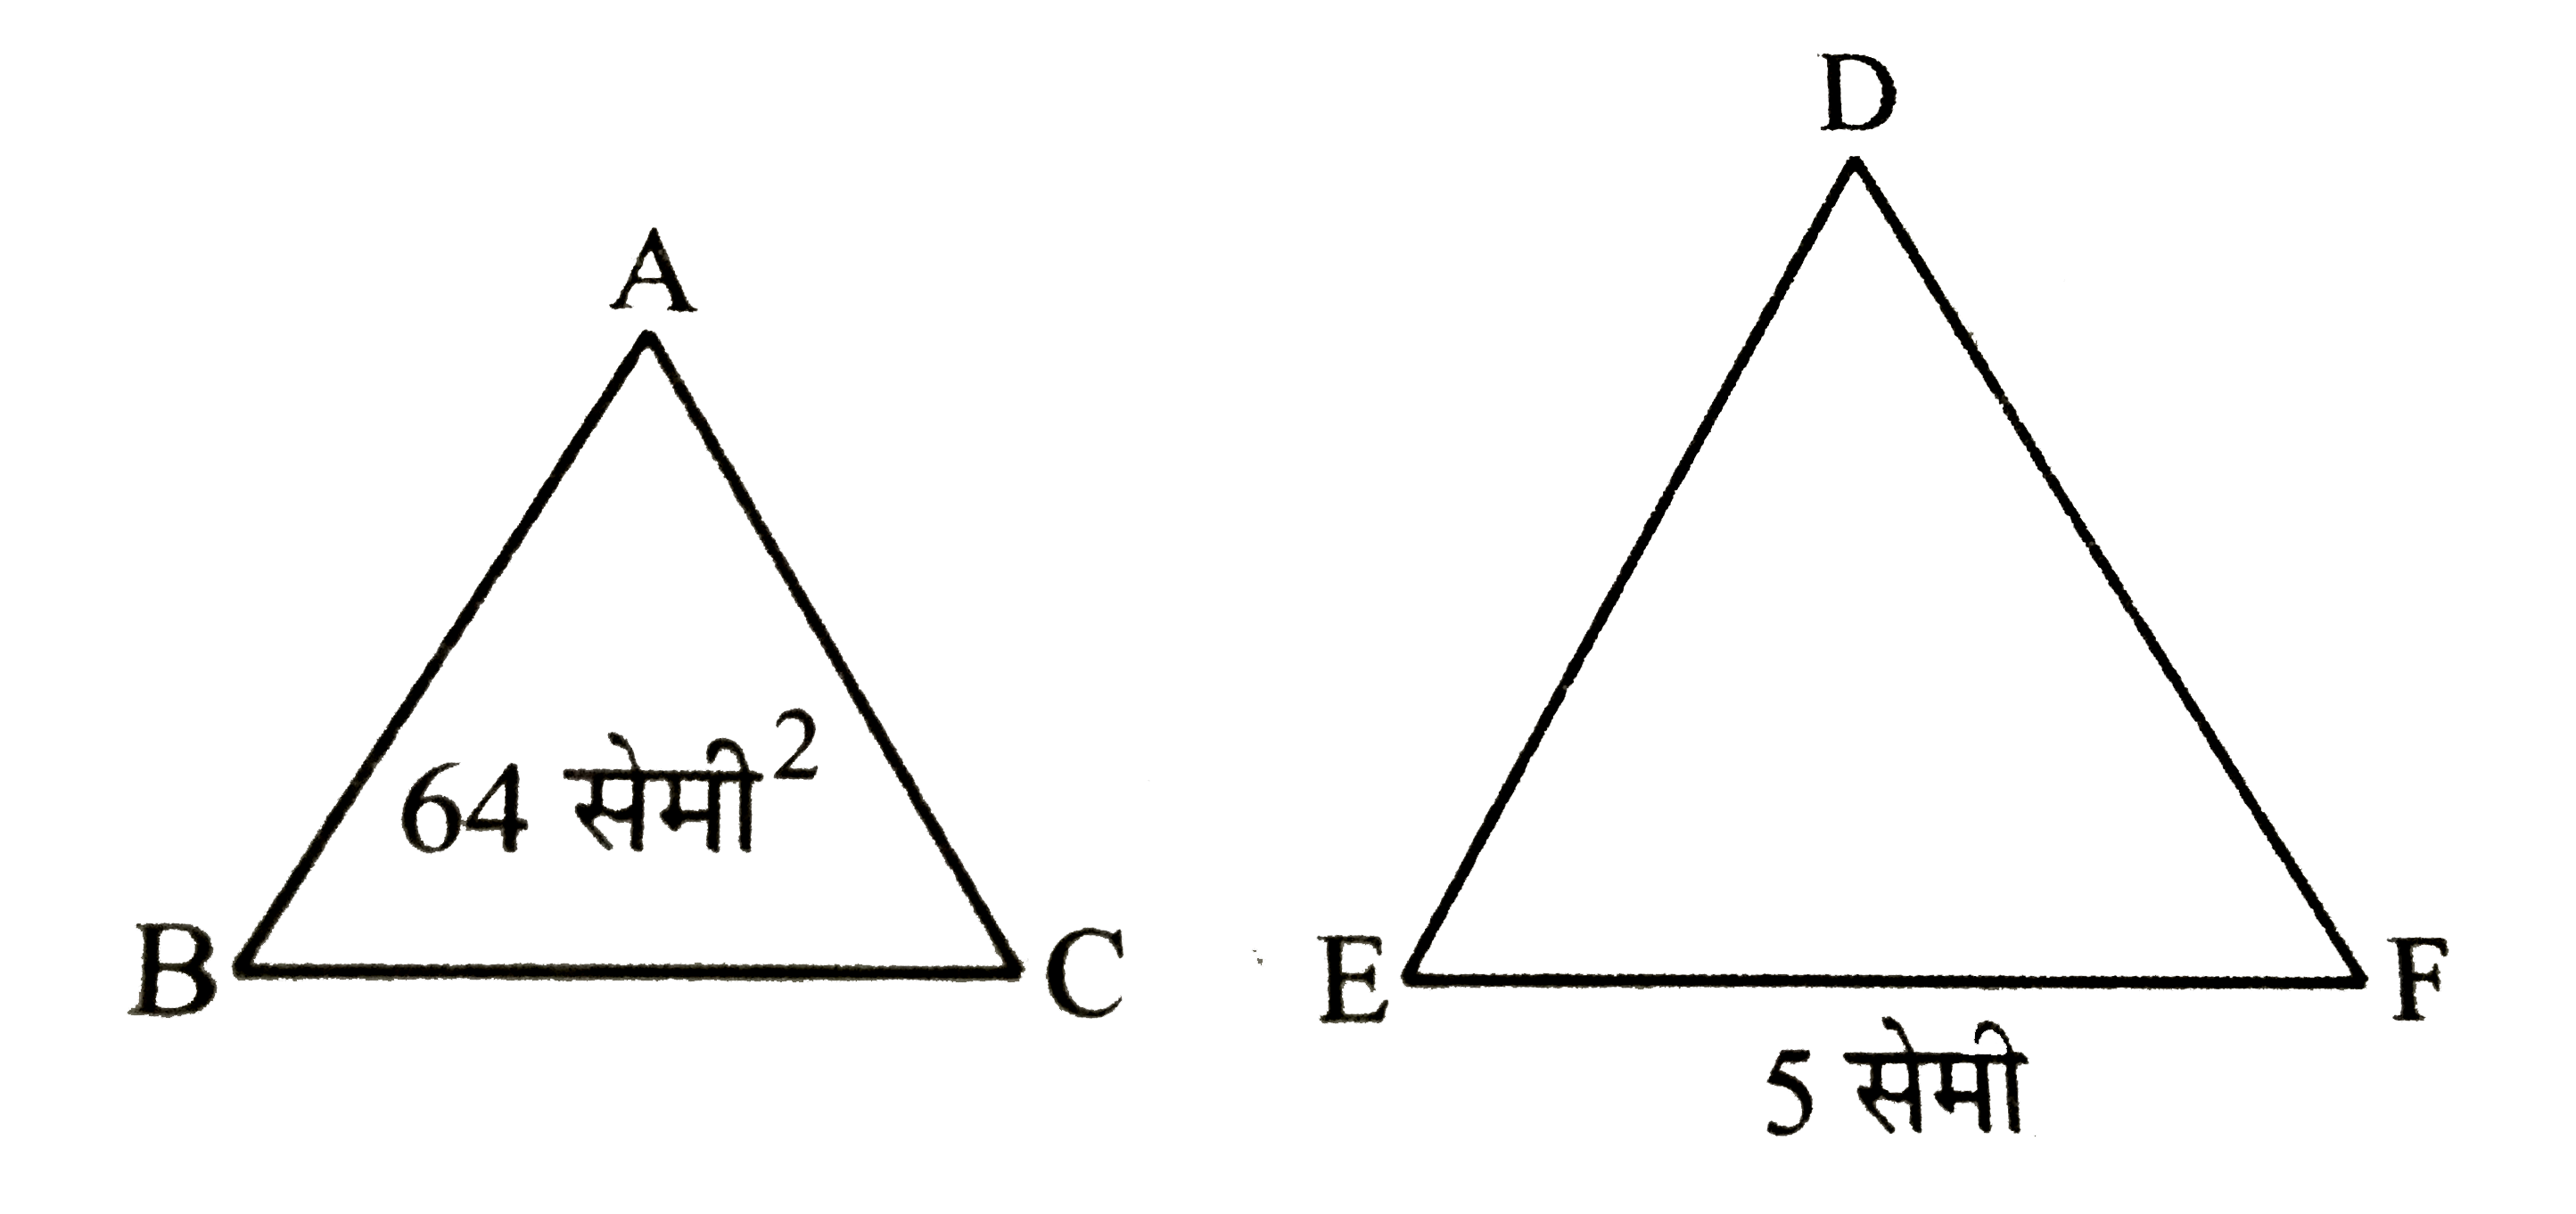 माना दो समरूप त्रिभुज ABC तथा DEF है तथा BC = 4 सेमी, EF = 5 सेमी और triangle ABC का क्षेत्रफल  = 64 सेमी